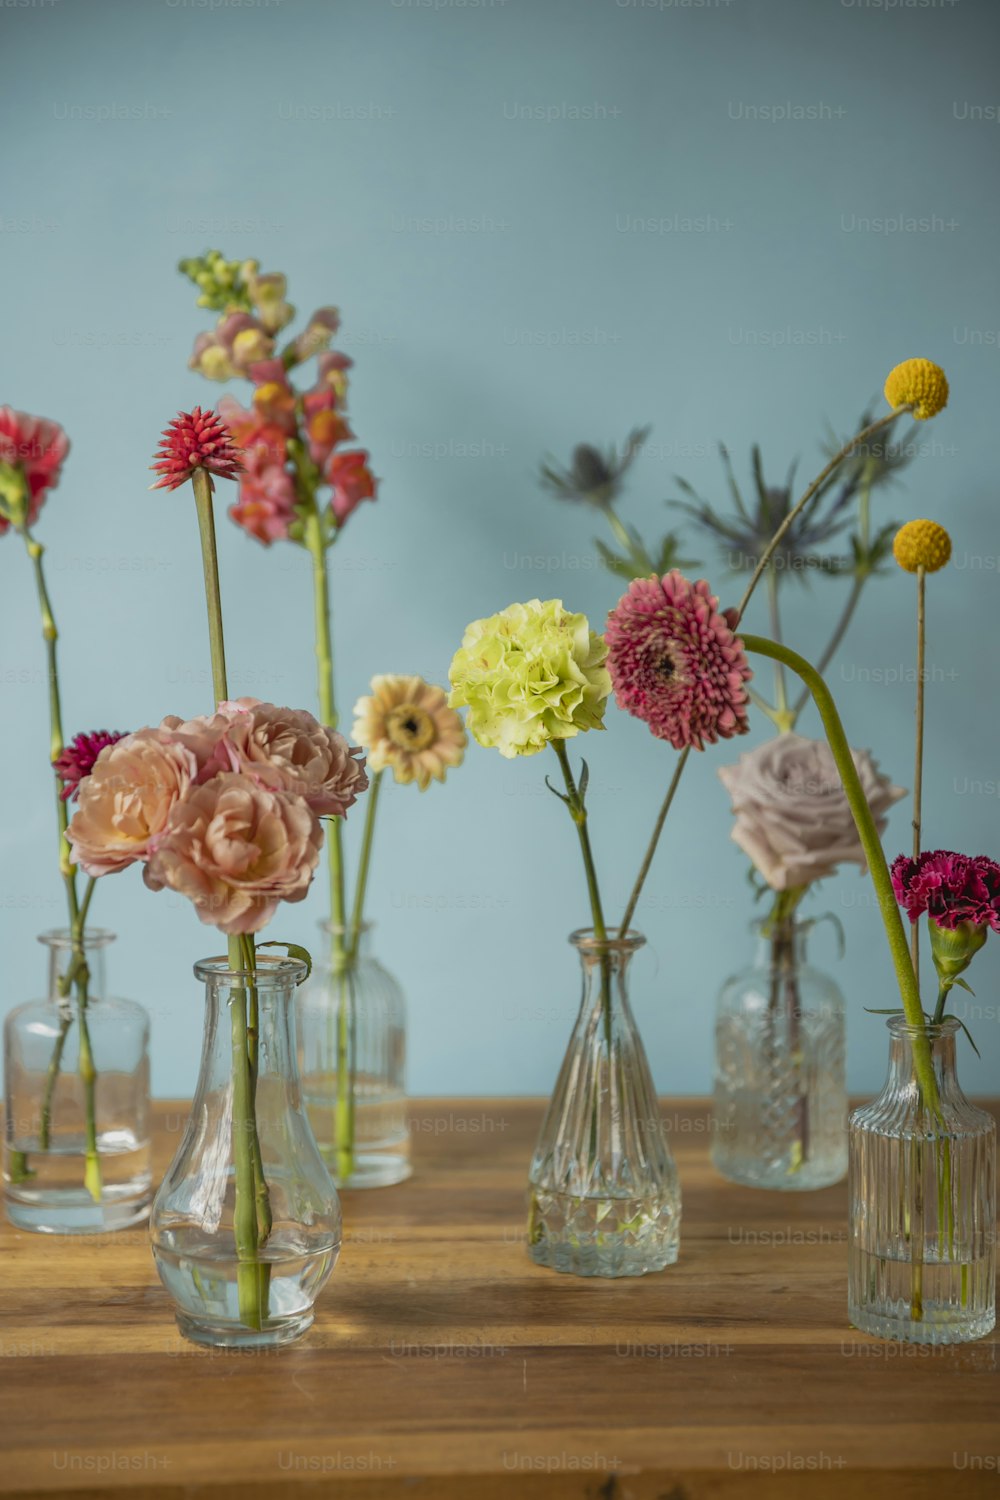 eine Gruppe von Vasen, die mit verschiedenfarbigen Blumen gefüllt sind